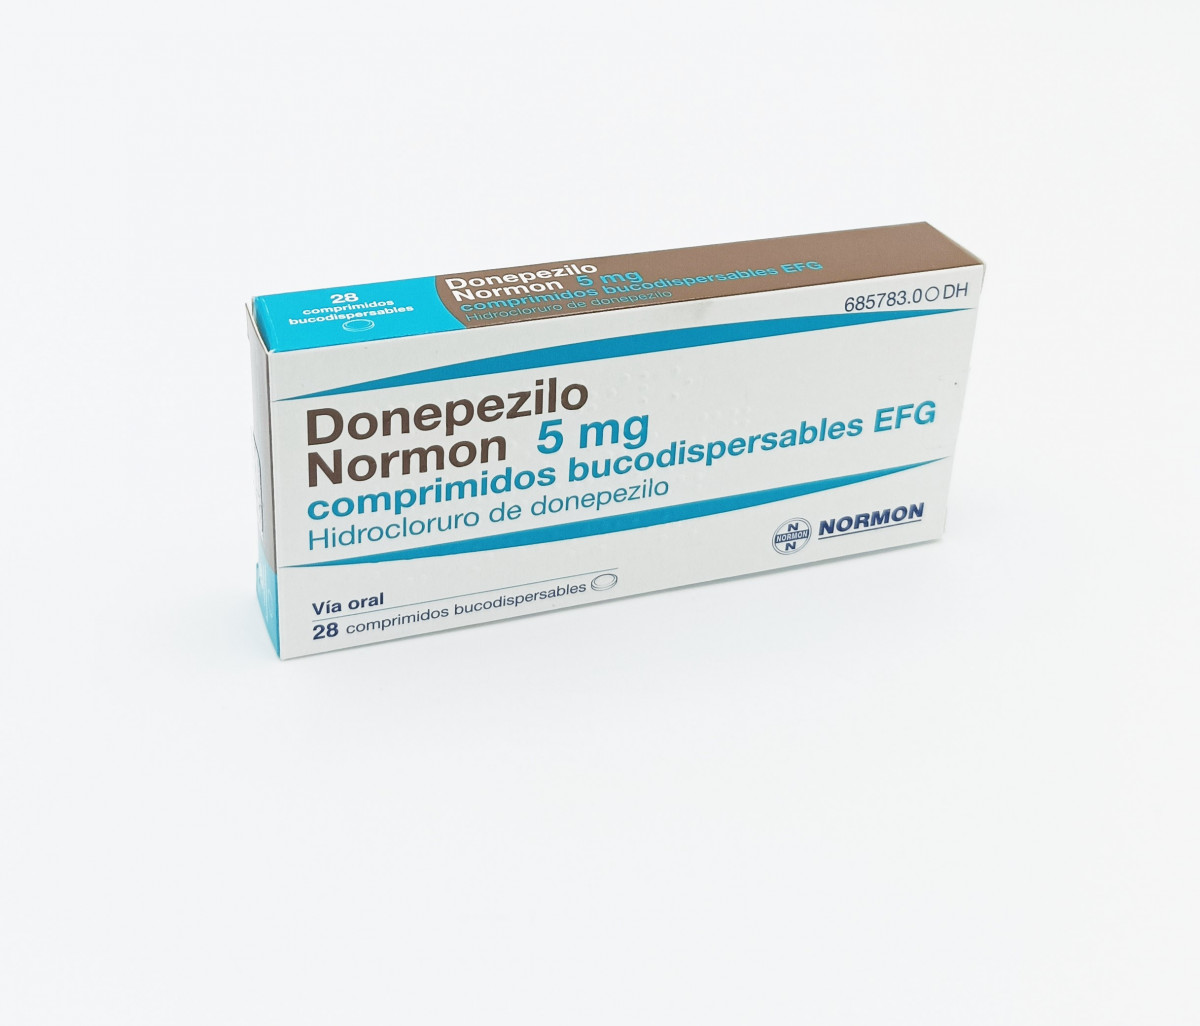 DONEPEZILO NORMON 5 mg COMPRIMIDOS BUCODISPERSABLES EFG, 28 comprimidos fotografía del envase.